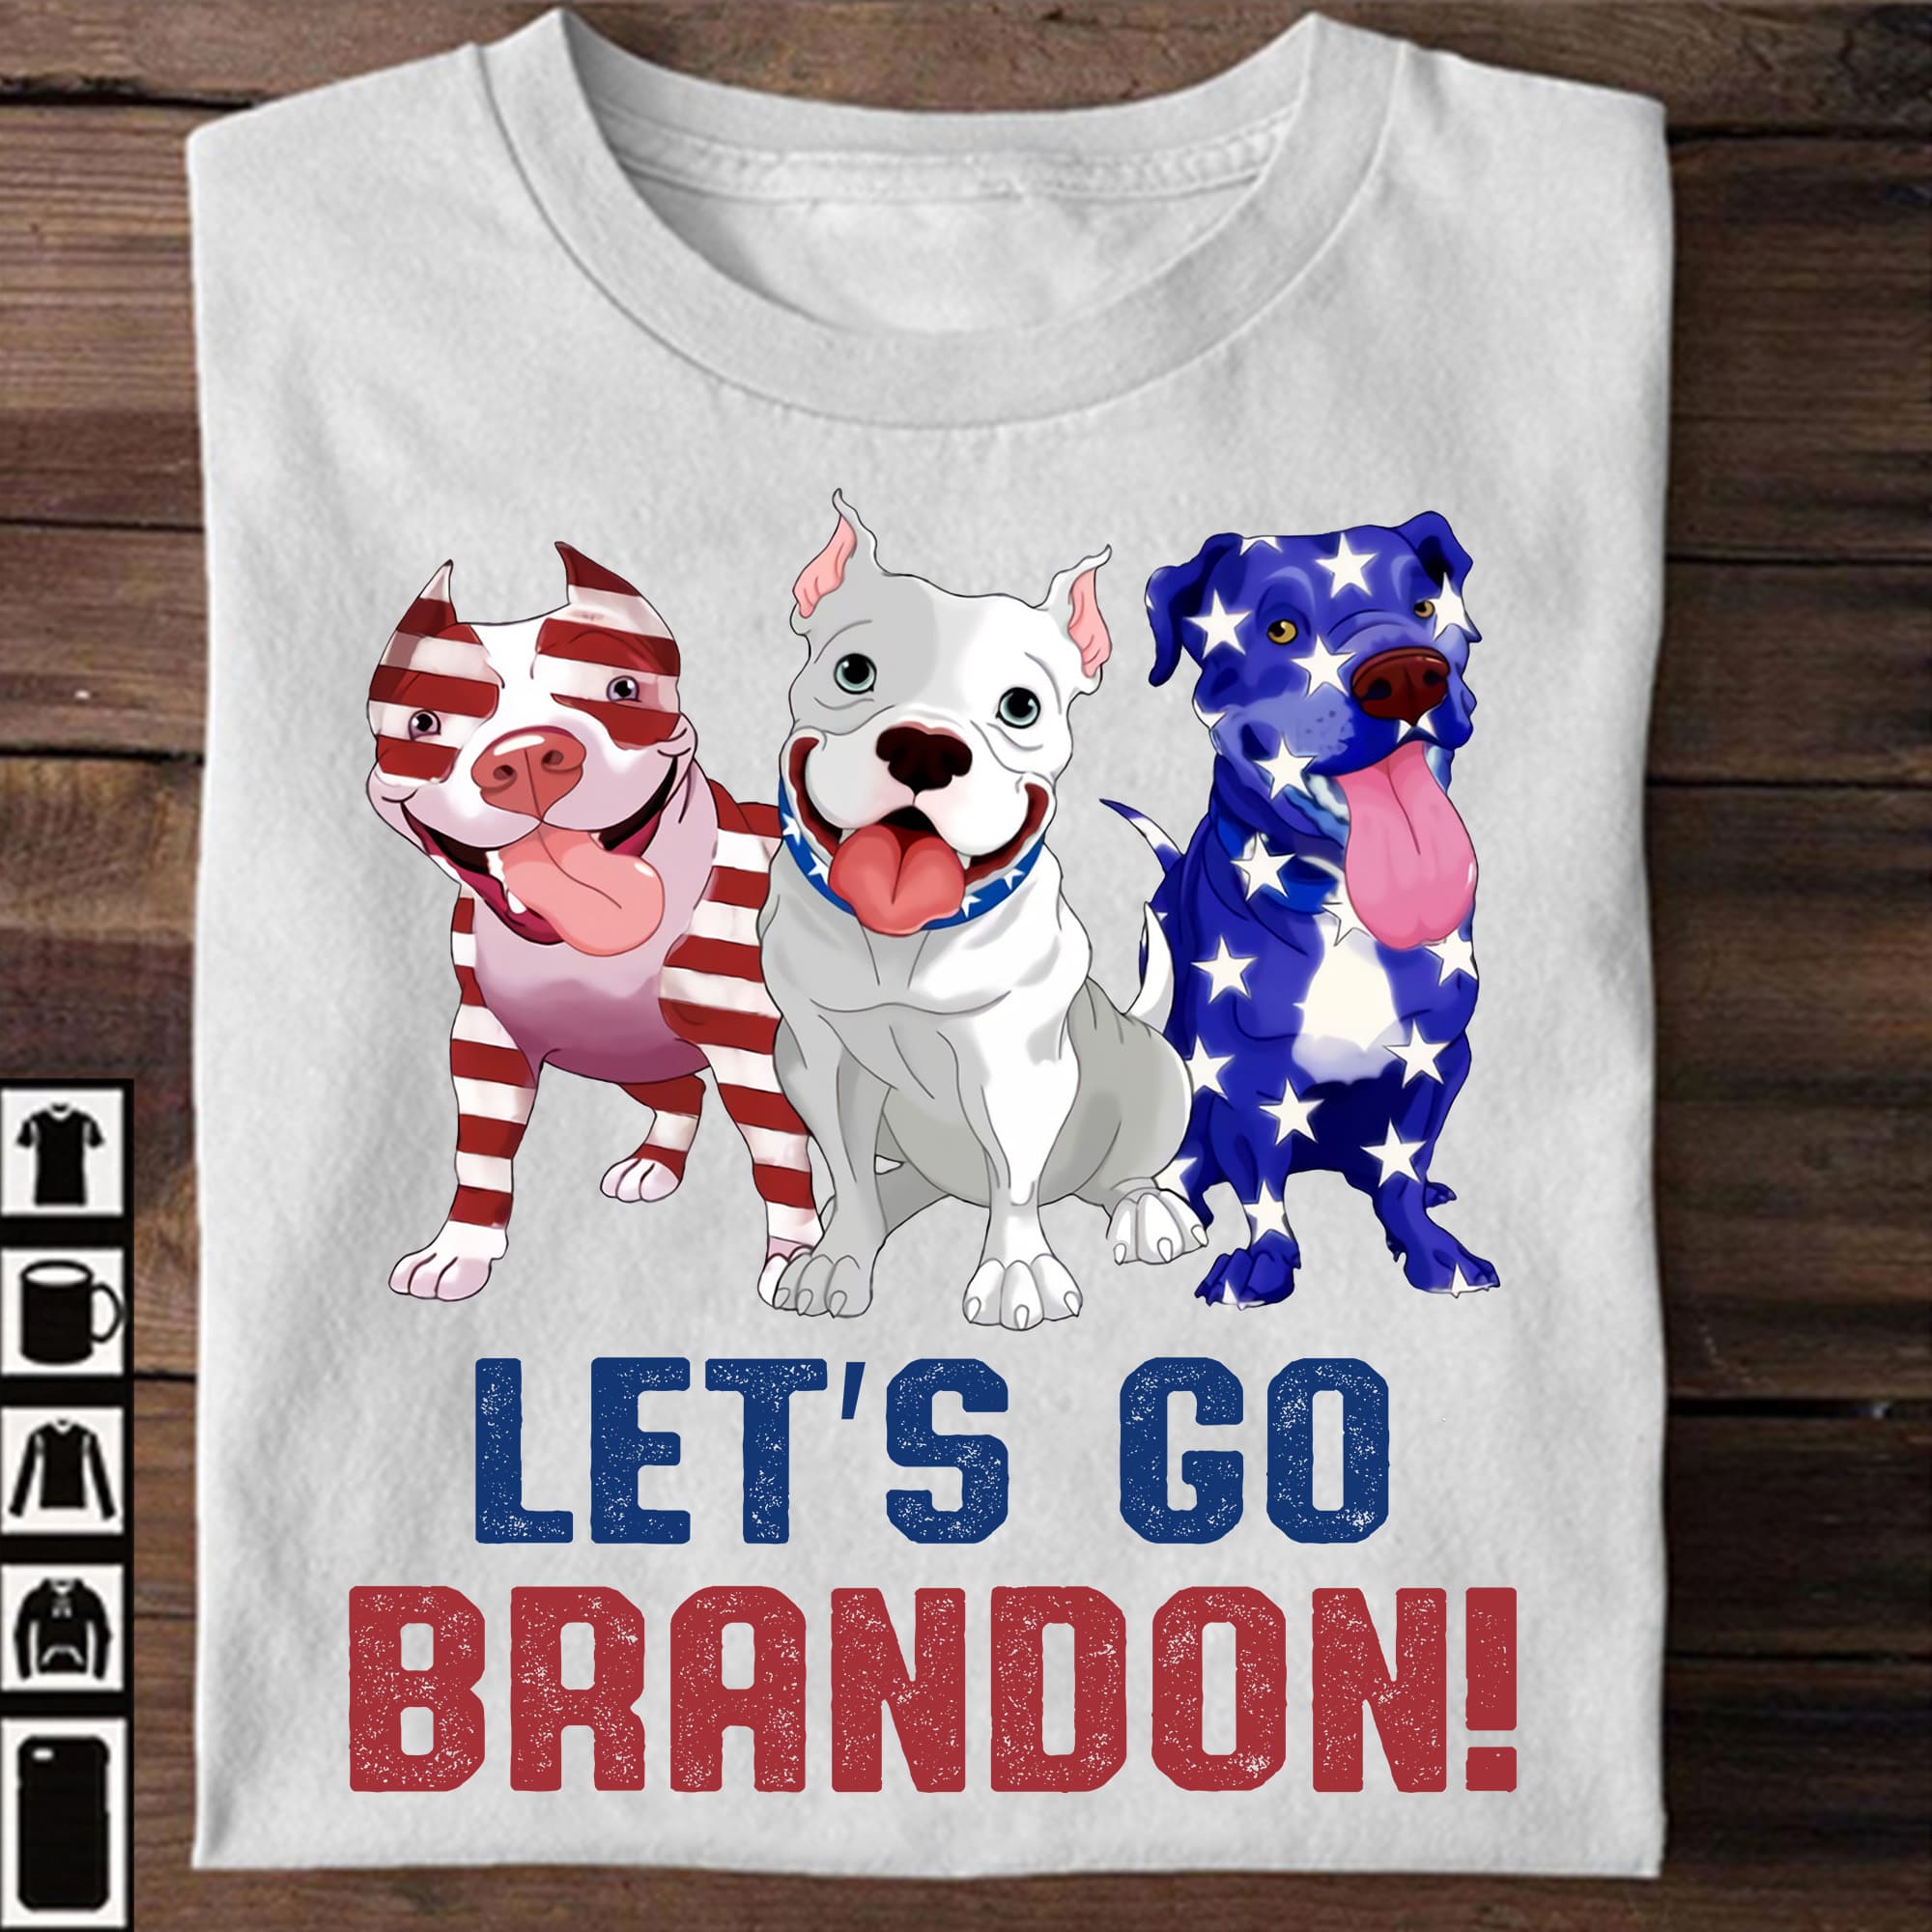 Let's go Brandon - Fvck Joe Biden, gift for American, Pitbull dog lover